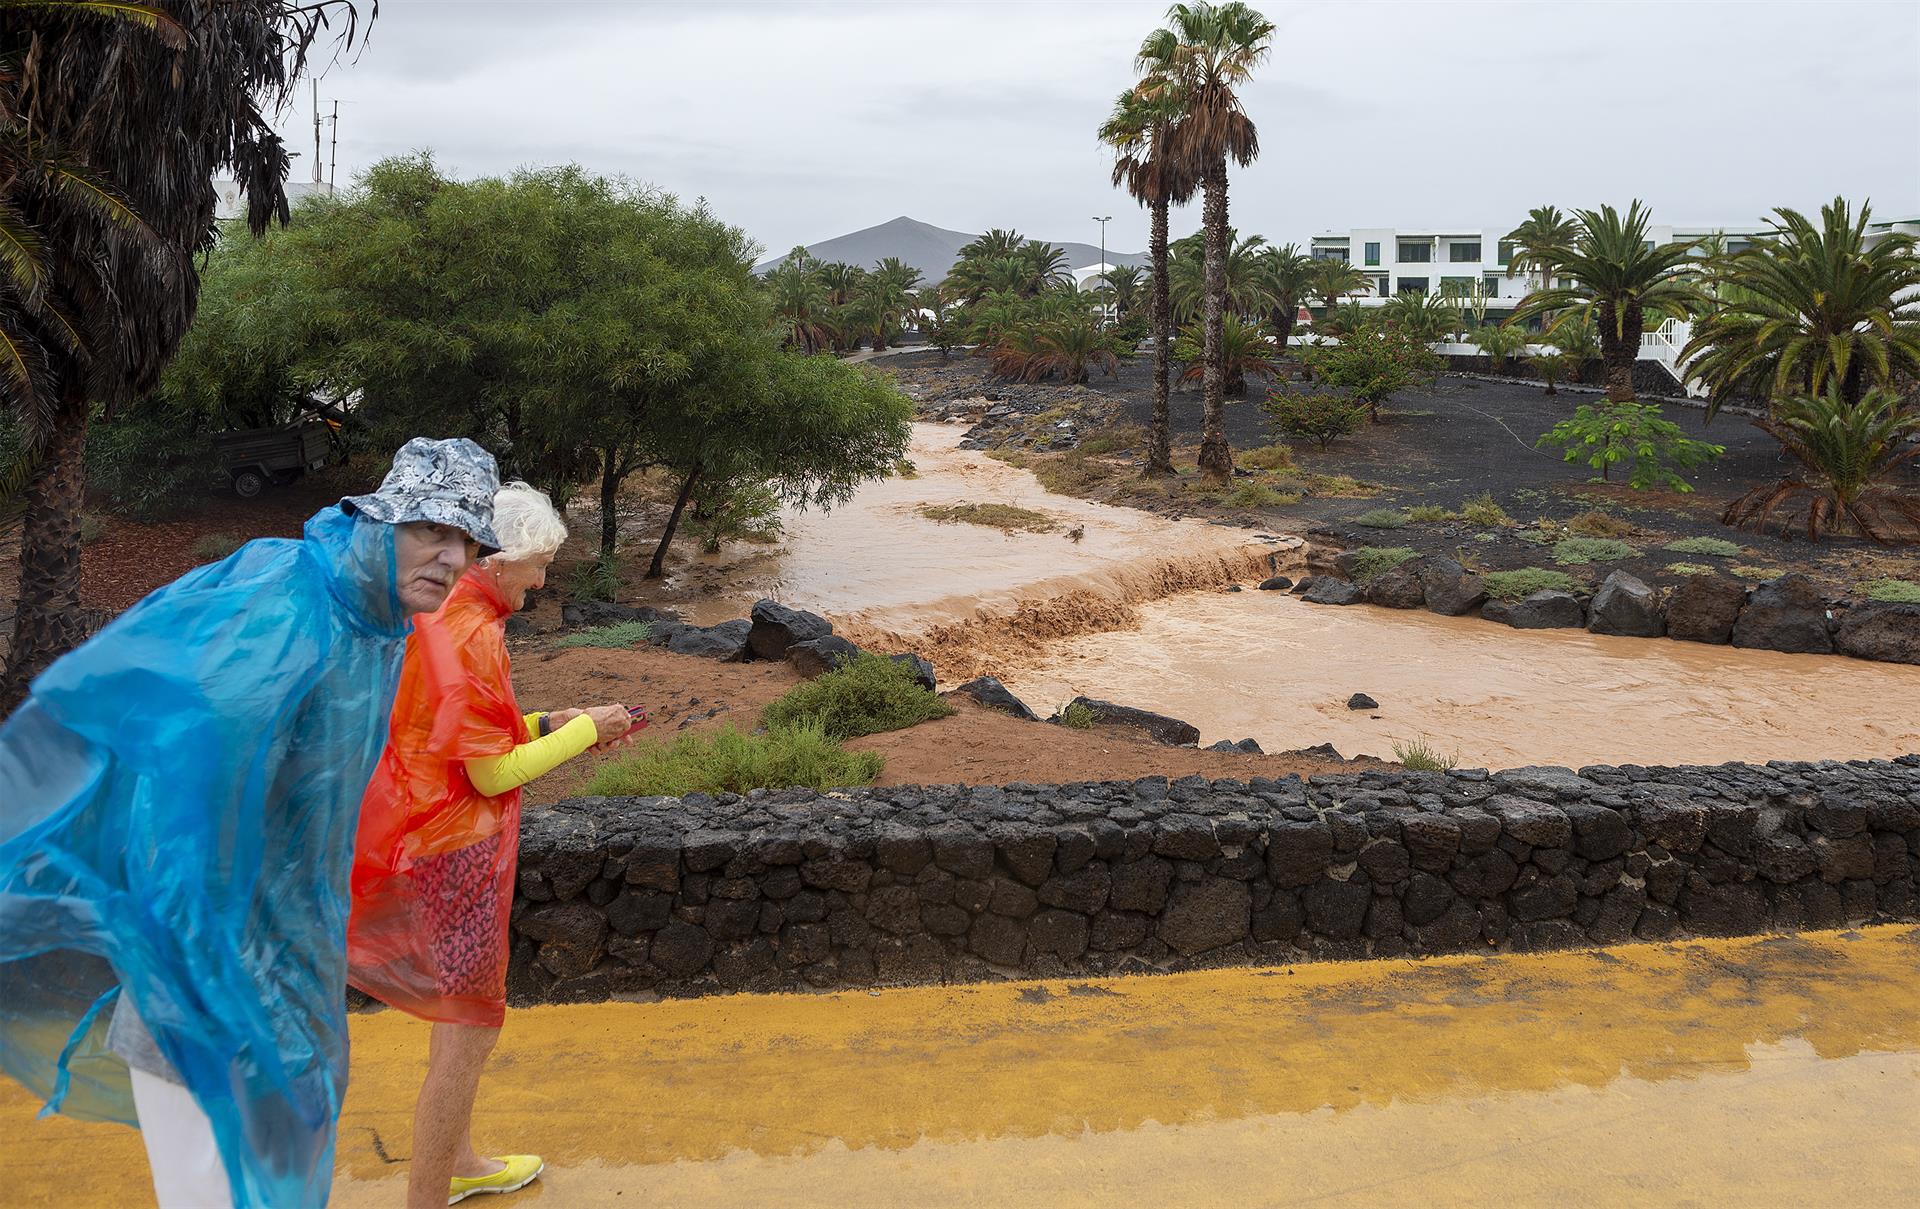 La tormenta tropical Hermine ha dejado lluvias moderadas en la isla de Lanzarote. En la imagen, unos turistas observan el barranco que desemboca en la playa de Las Cucharas, en Costa Teguise. EFE/Adriel Perdomo
